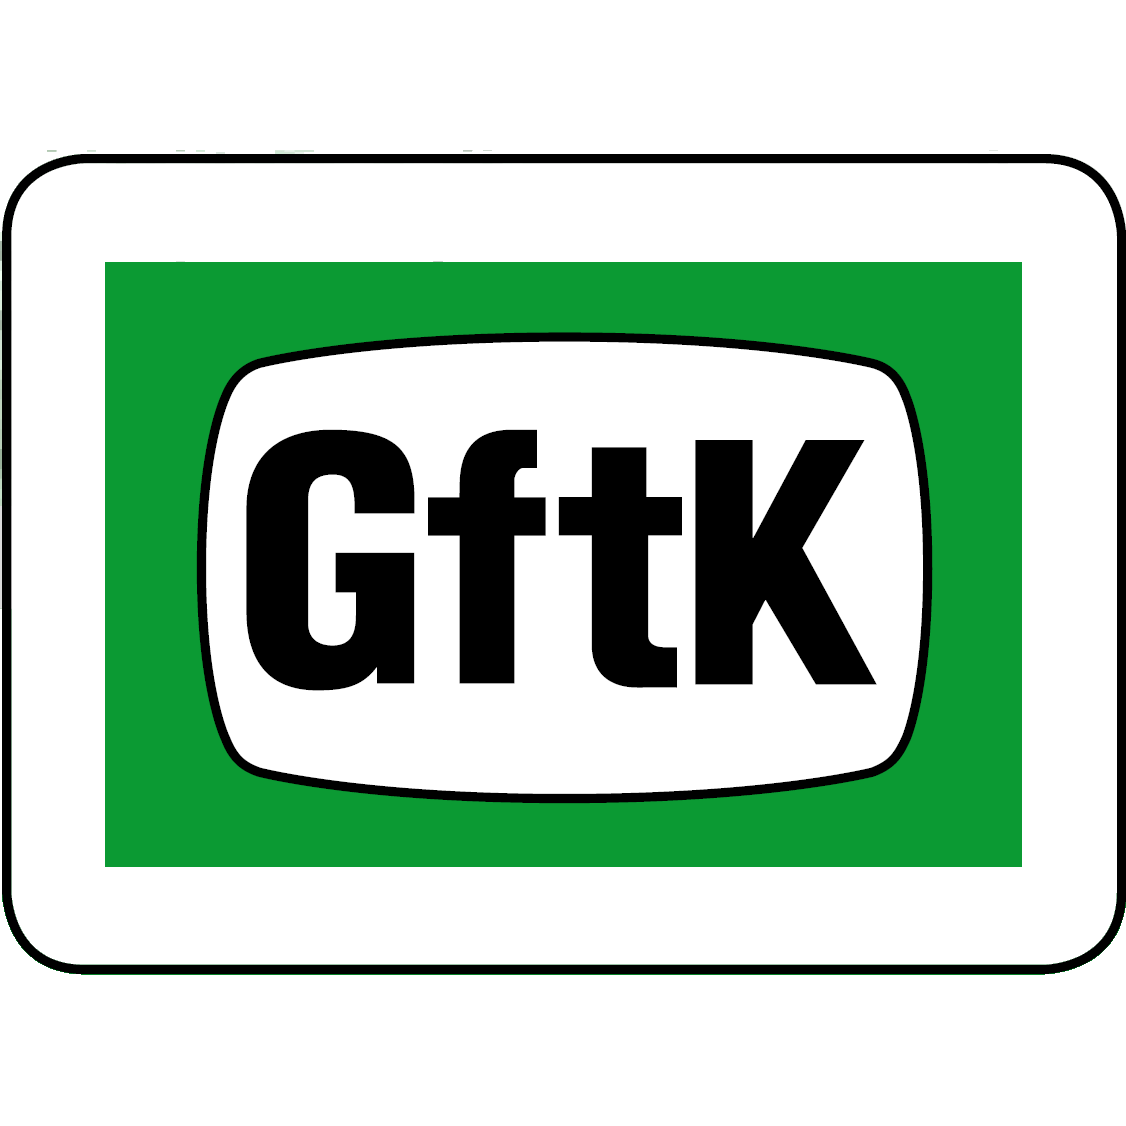 GftK - Gesellschaft für technische Kunststoffe mbH